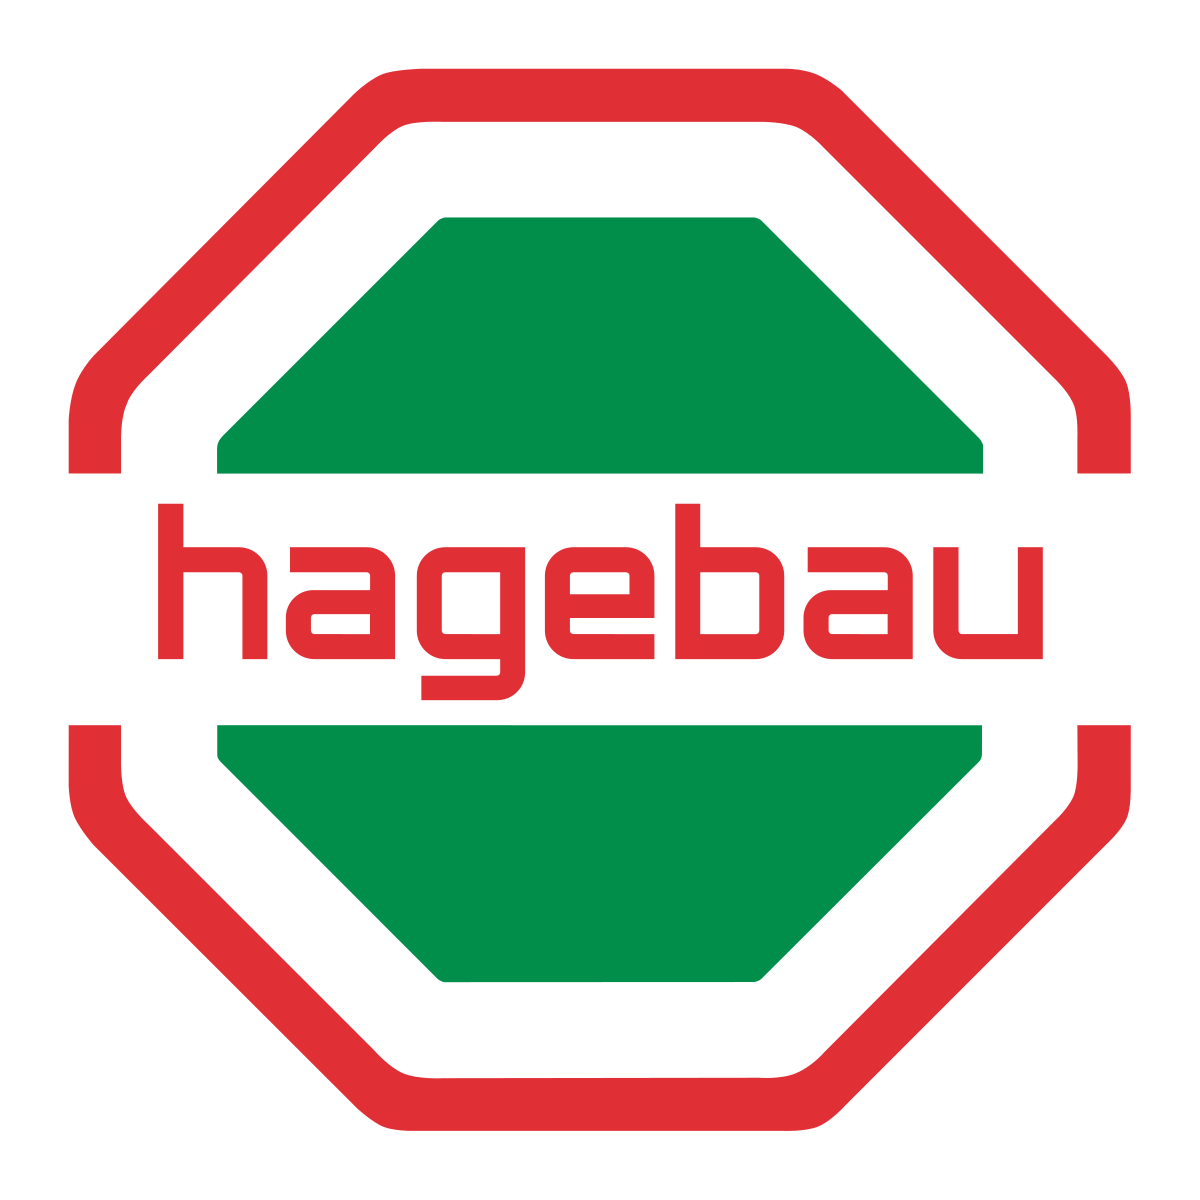 hagebau-logo